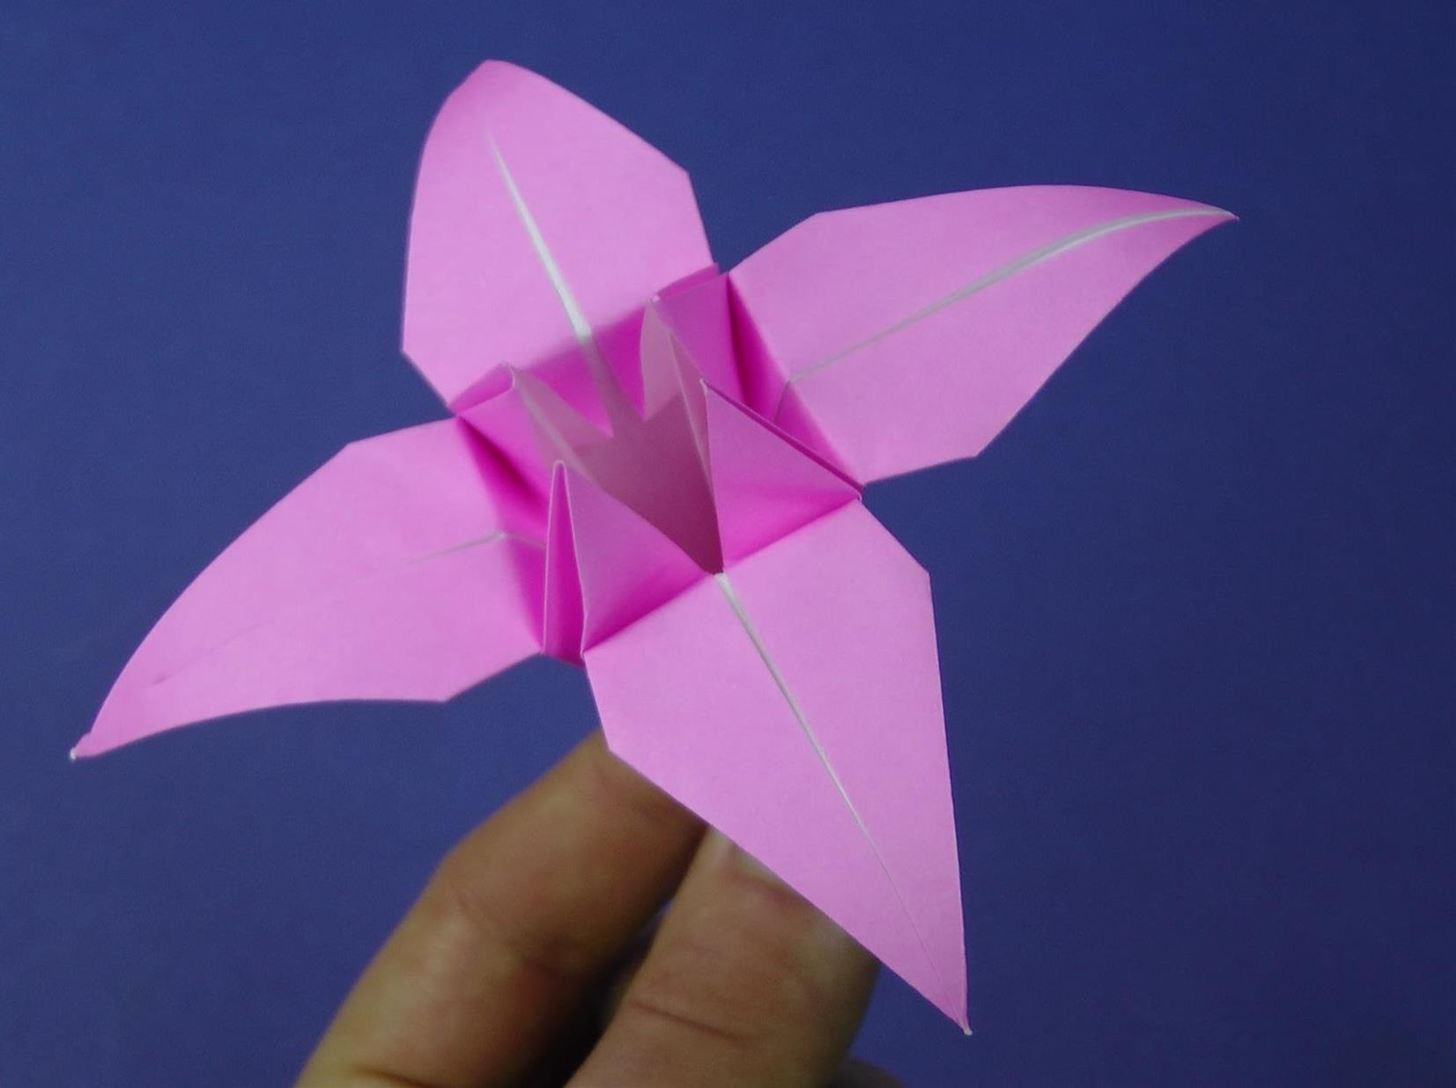 How To Make An Origami How To Make An Origami Lily Flower Origami Wonderhowto